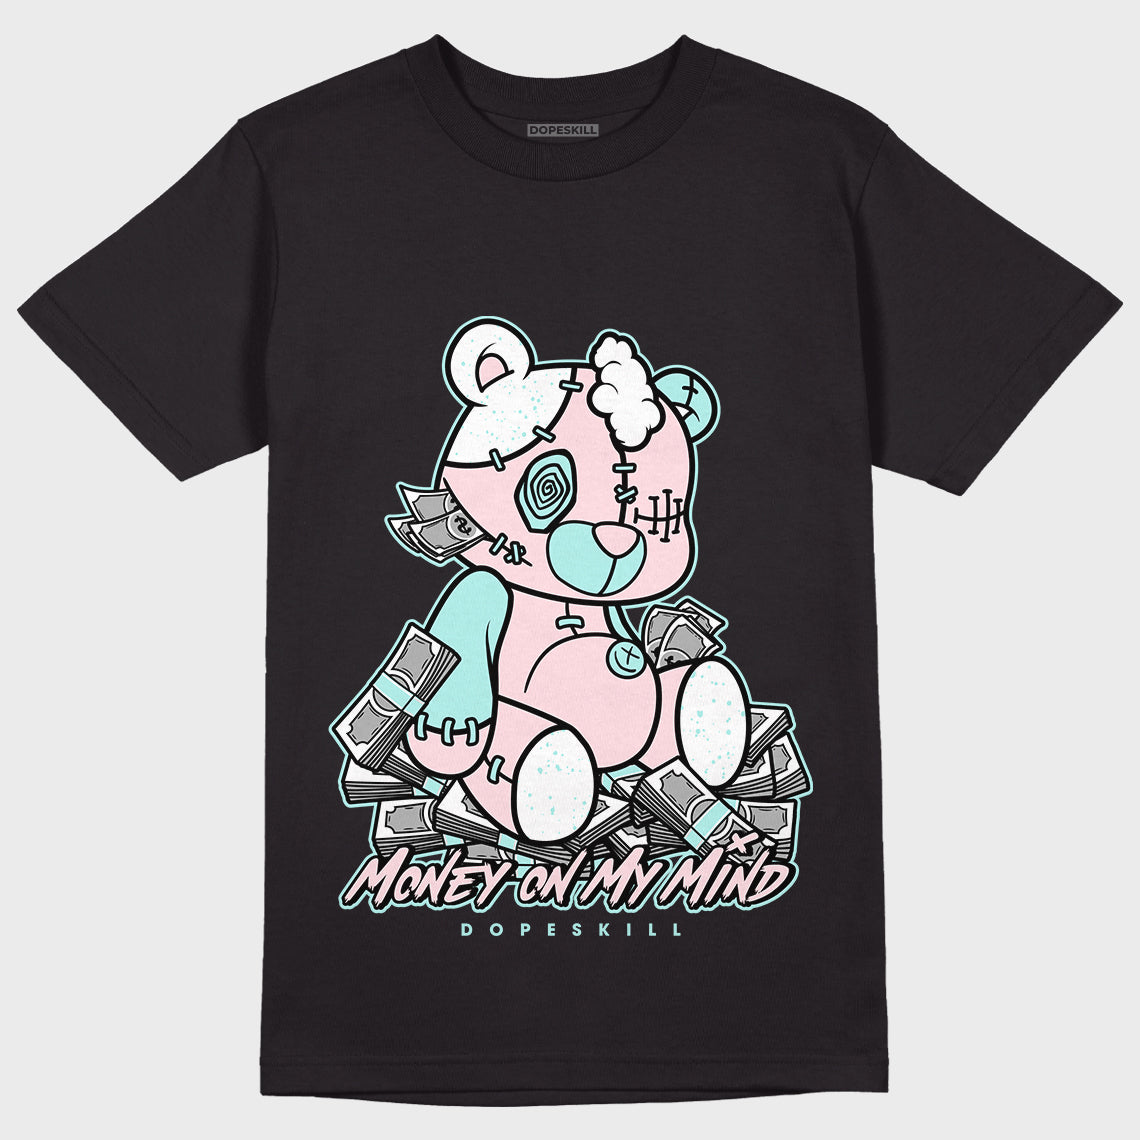 Jordan 5 Easter DopeSkill T-Shirt MOMM Bear Graphic - Black